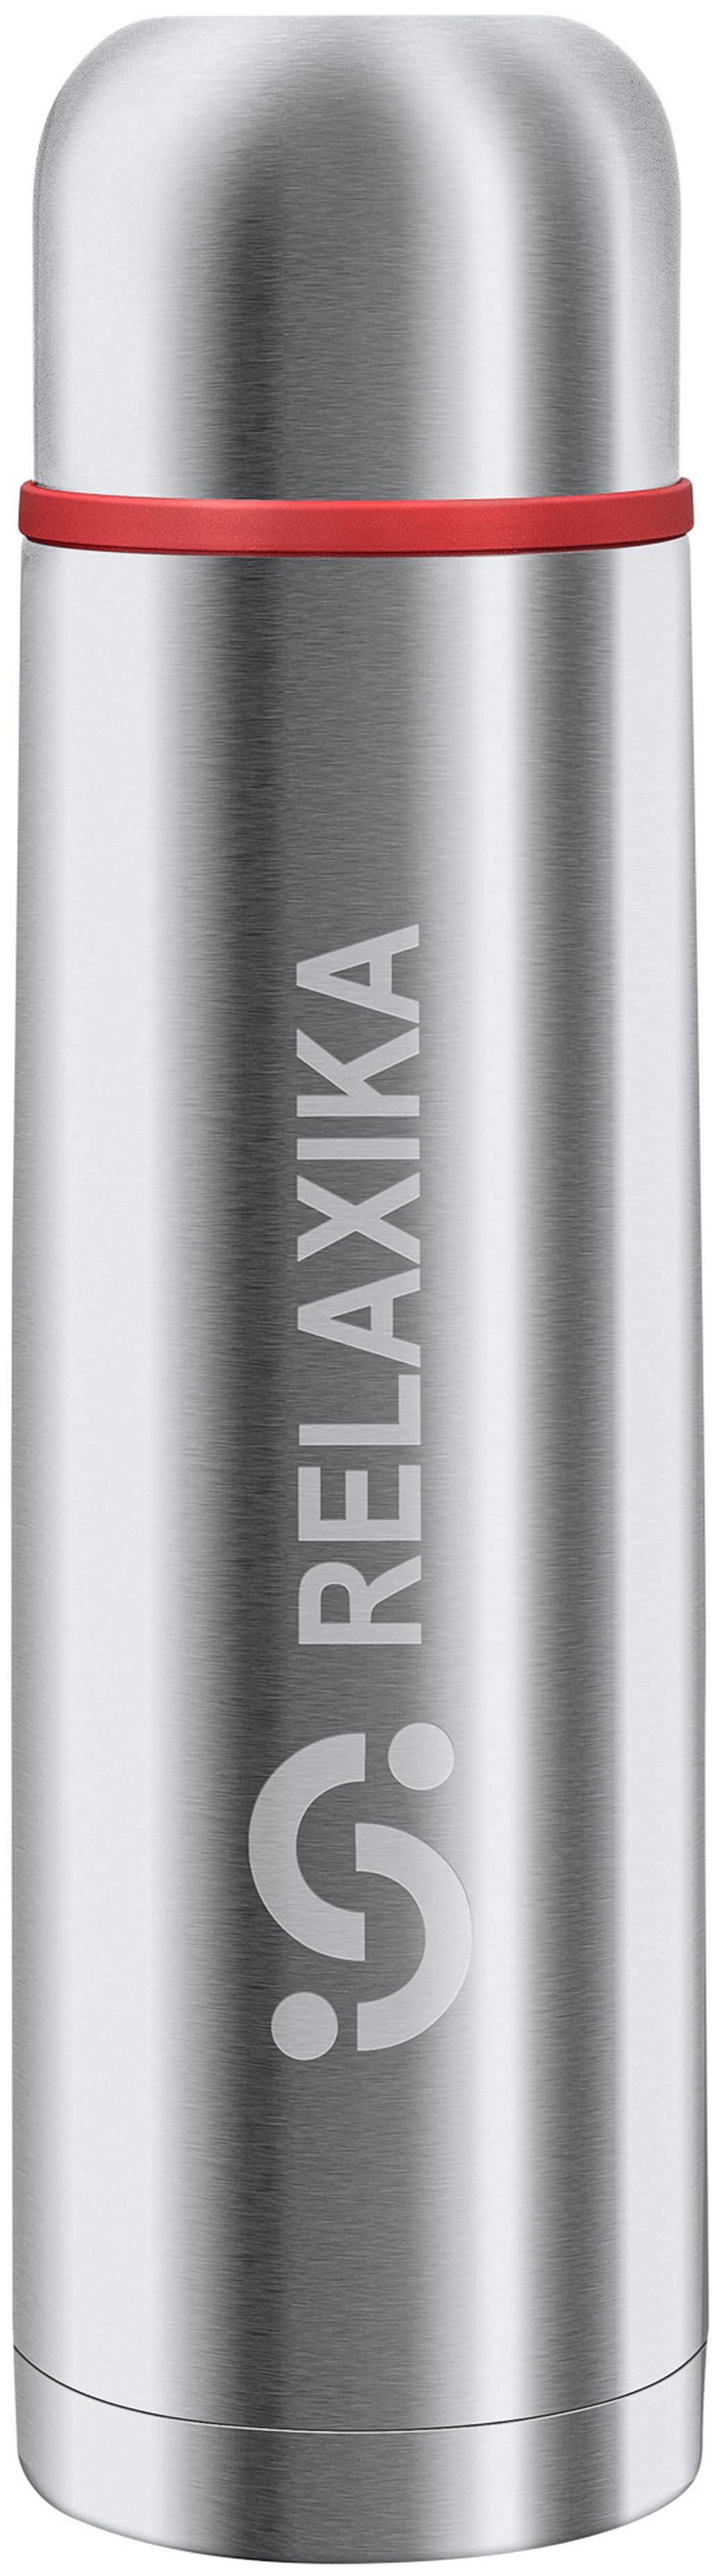 Термос Relaxika 101 (0,35 литра), стальной, шт R101.350.1 фото